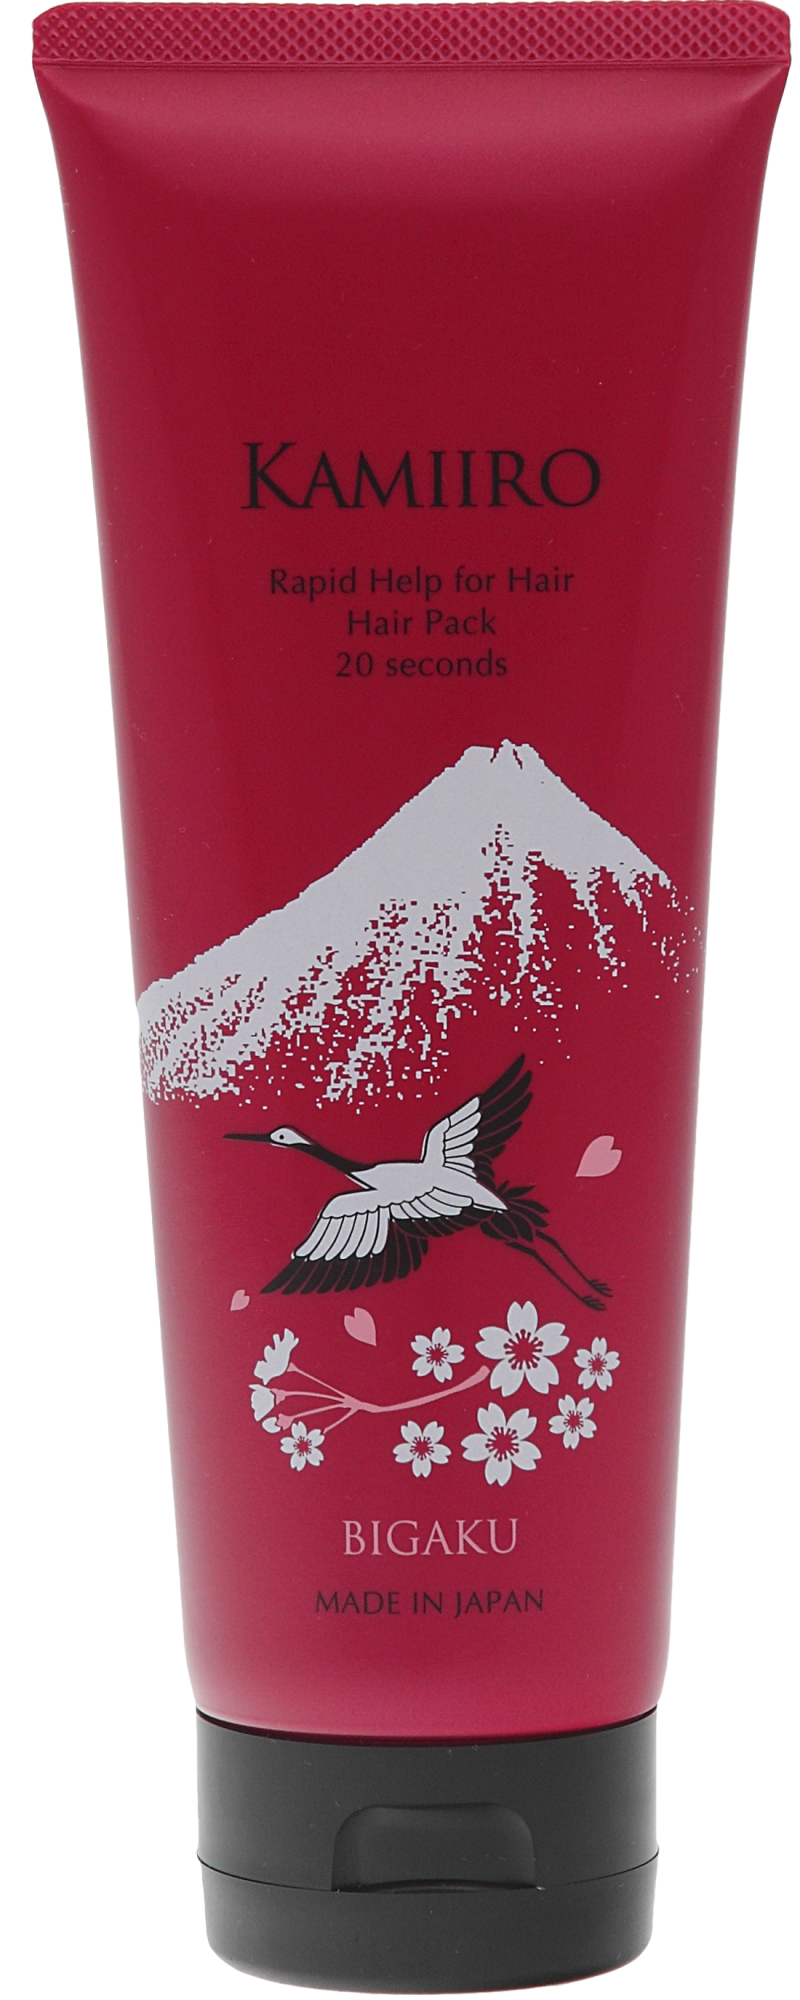 Маска для волос «Скорая помощь» для сильно поврежденных волос за  20 секунд Bigaku Rapid Help for Hair Hair Pack 20 seconds